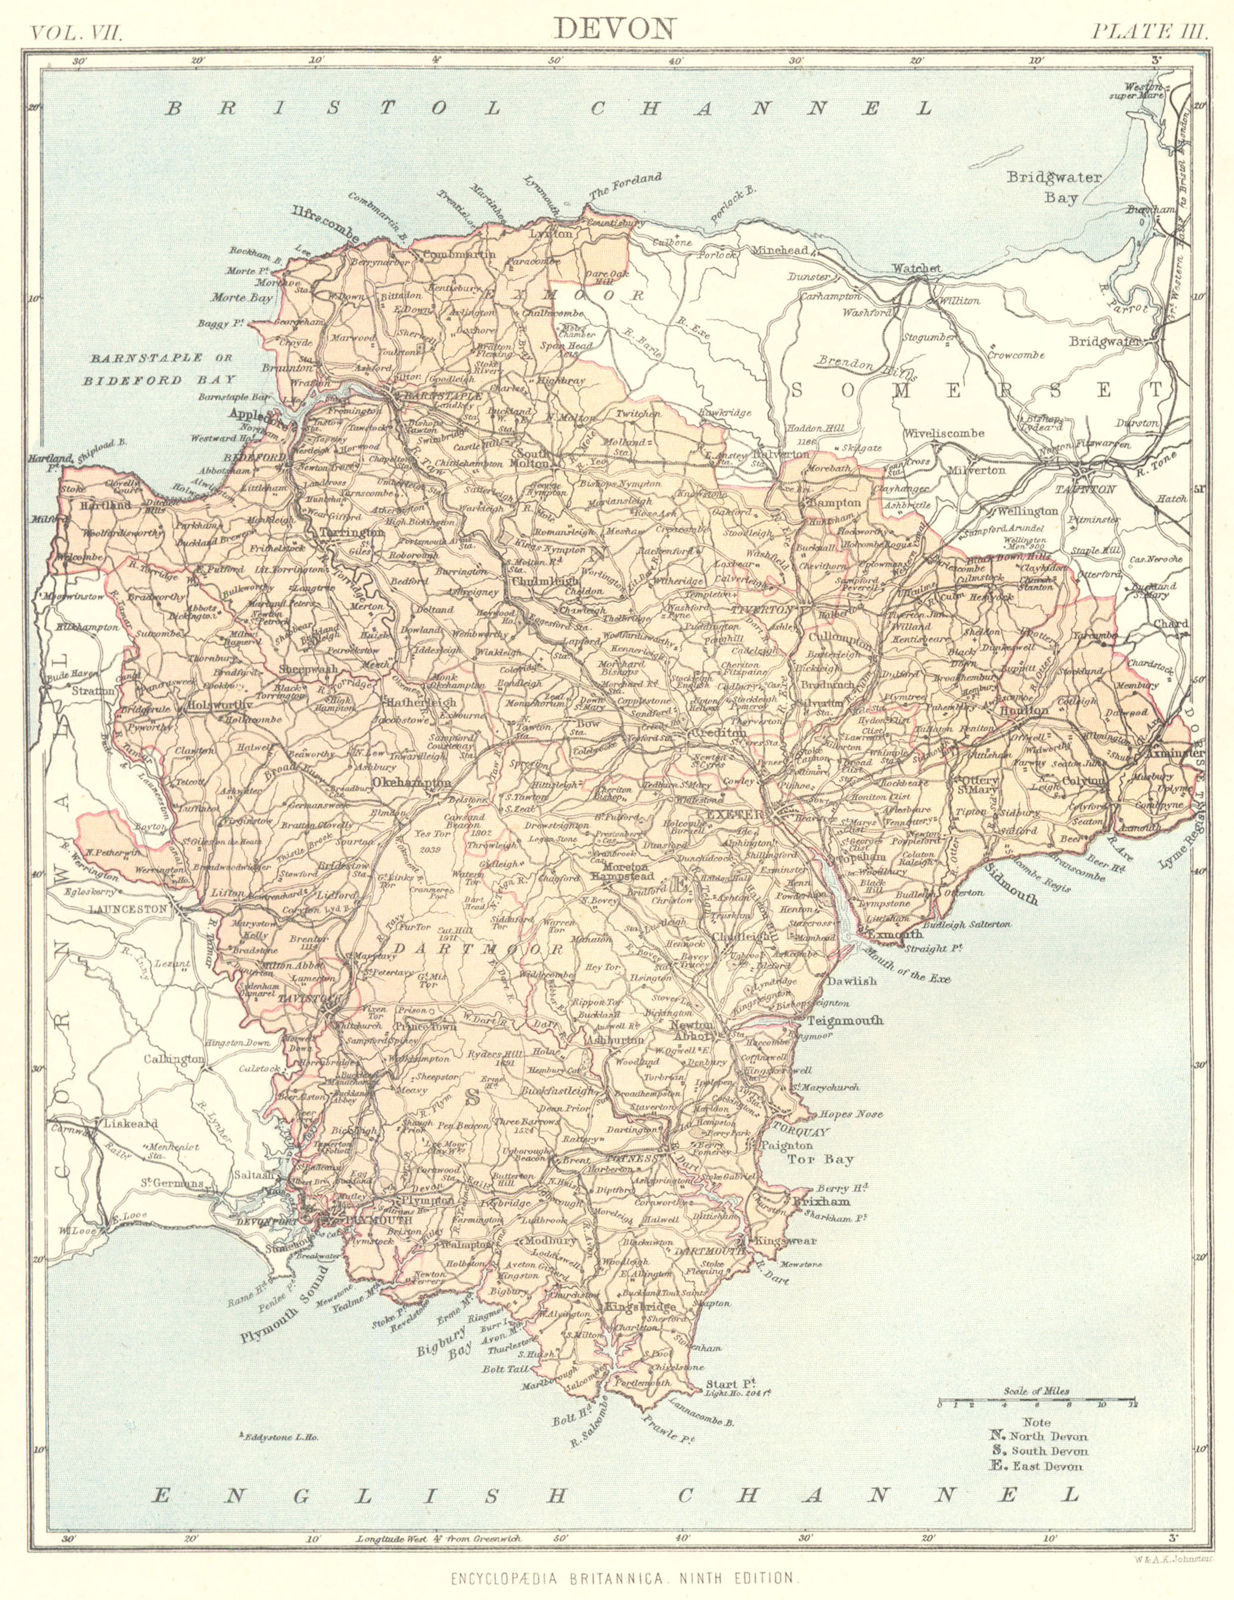 DEVON. Devonshire. Britannica 9th edition County map 1898 old antique